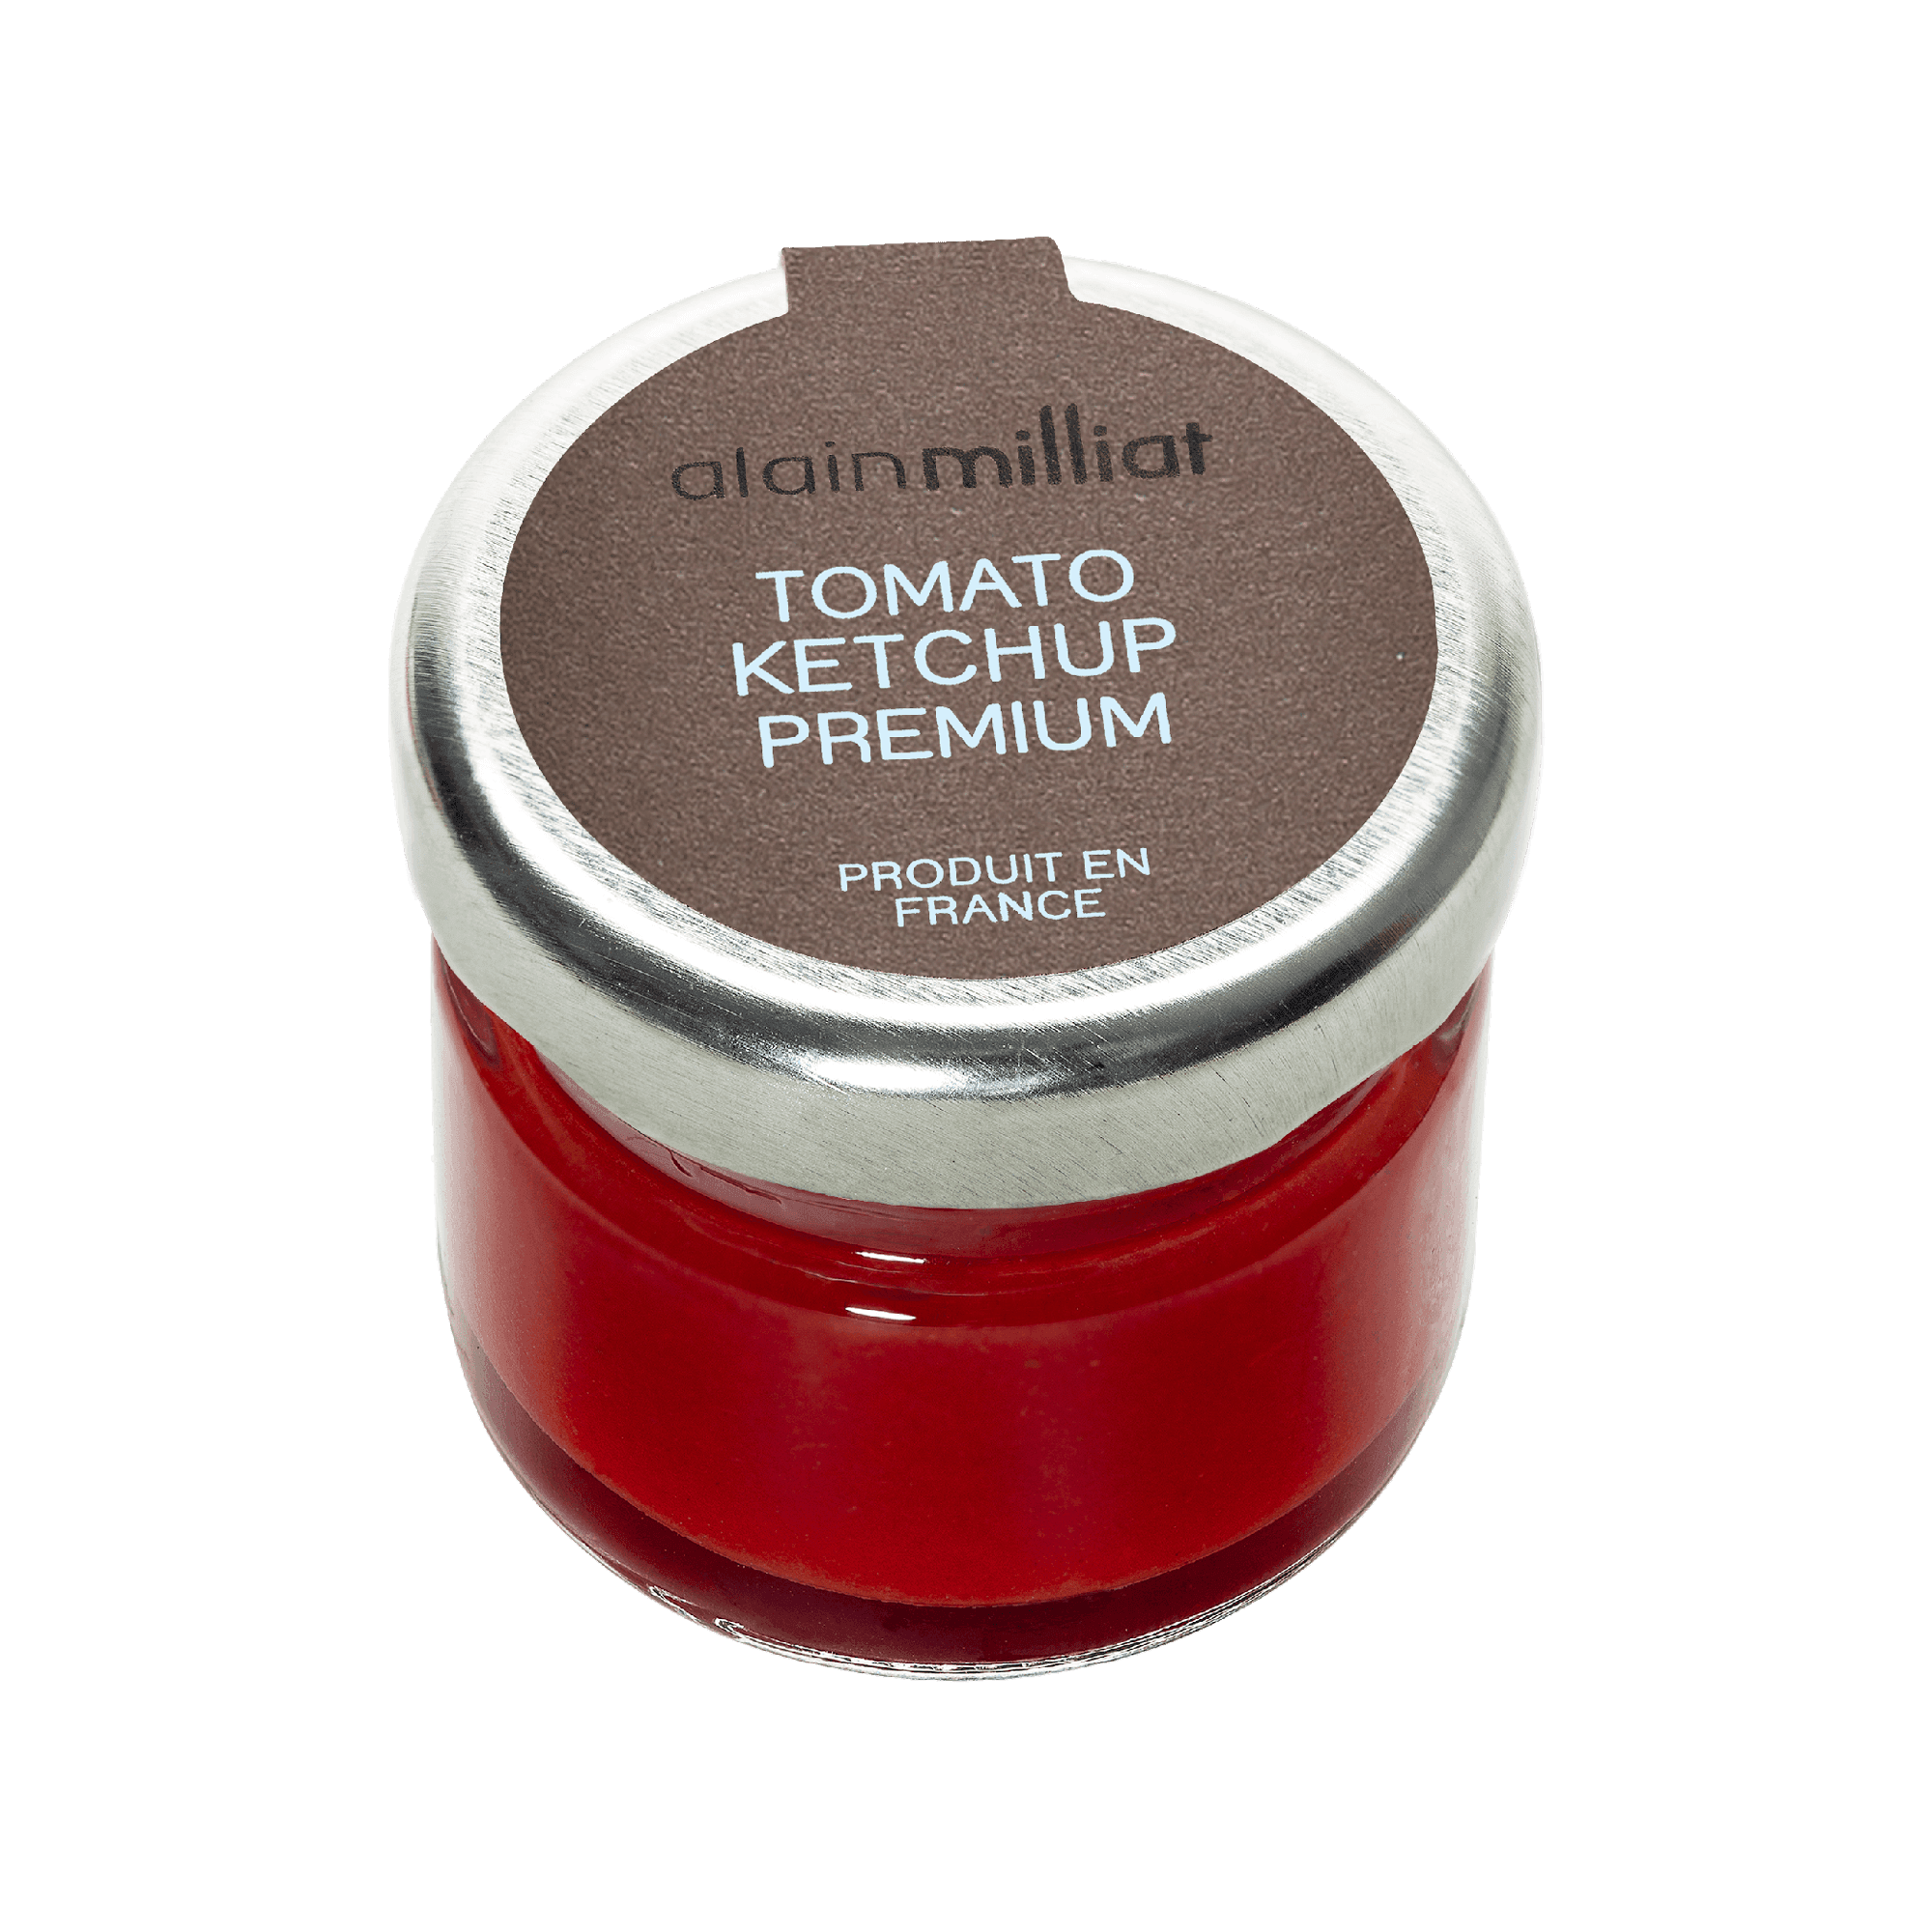 Premium Ketchup - Savory Gourmet